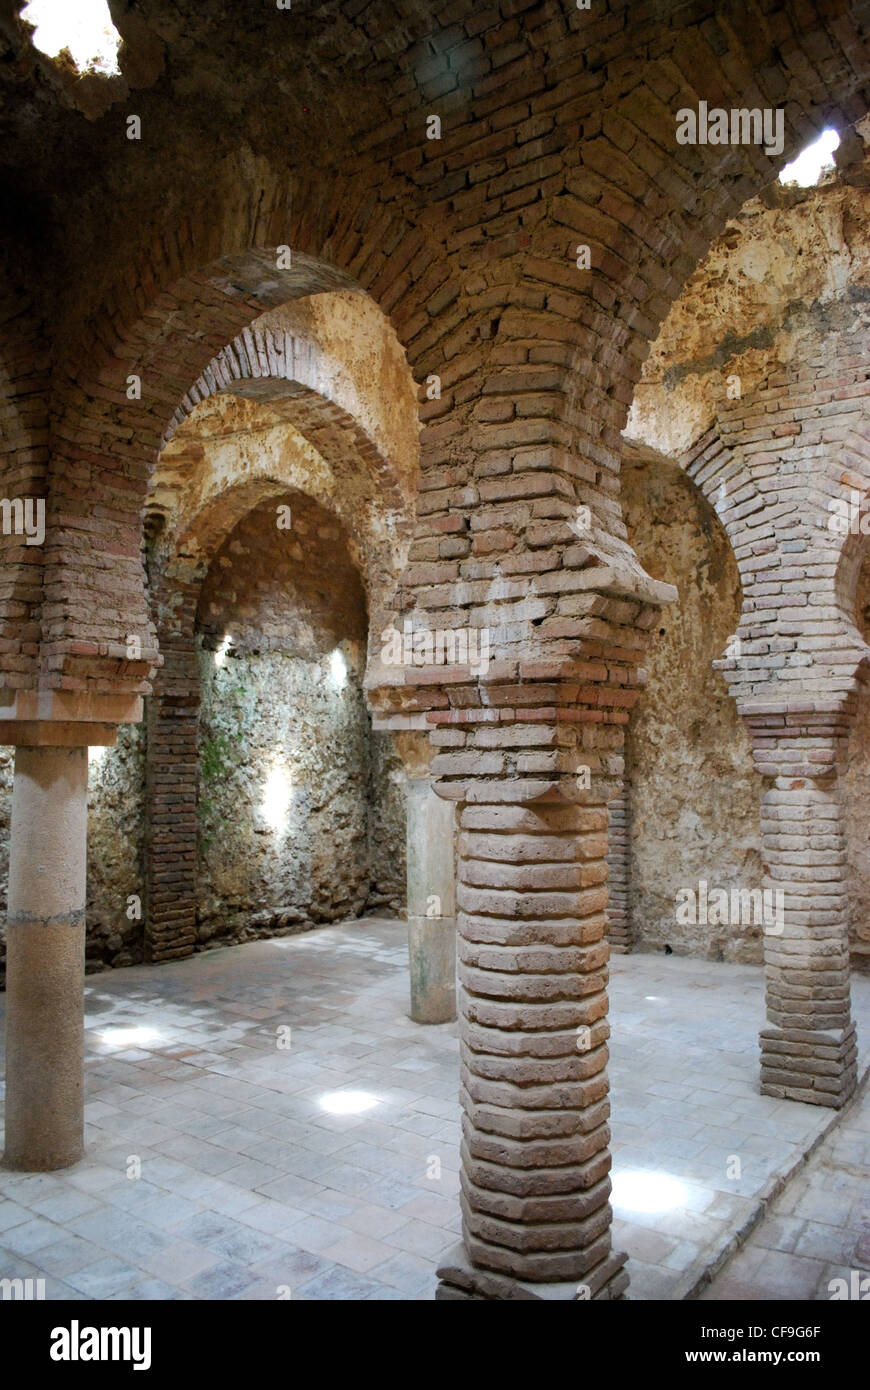 Les bains arabes à l'intérieur de colonnes en forme d'étoile avec lucarnes, Ronda, Province de Malaga, Andalousie, Espagne, Europe de l'Ouest. Banque D'Images